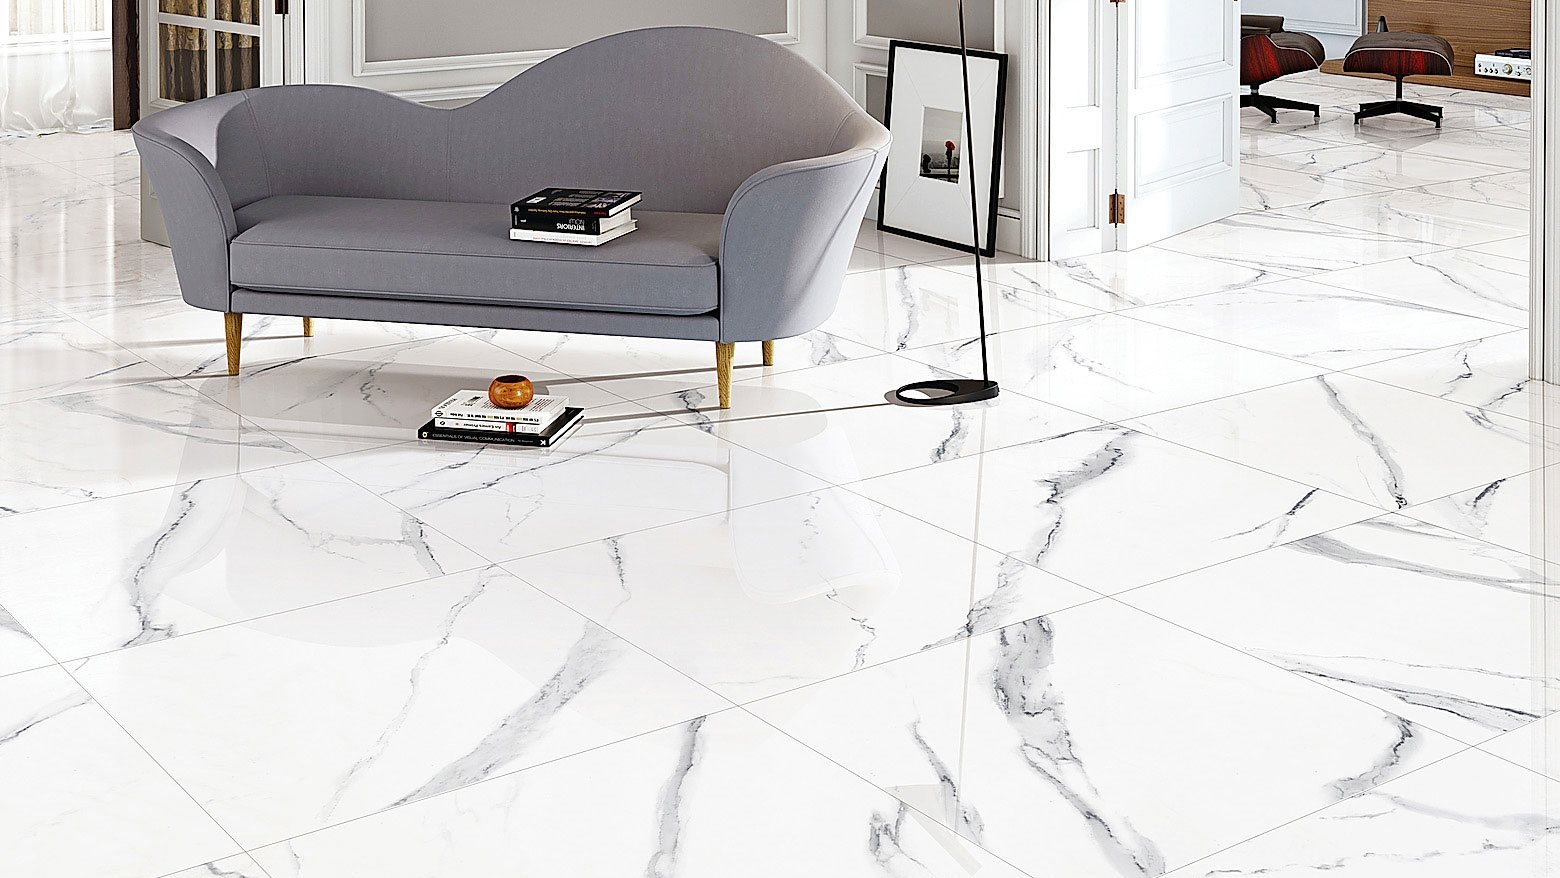 New Carrara 300x600mm Polished, Polished Porcelain Floor Tiles